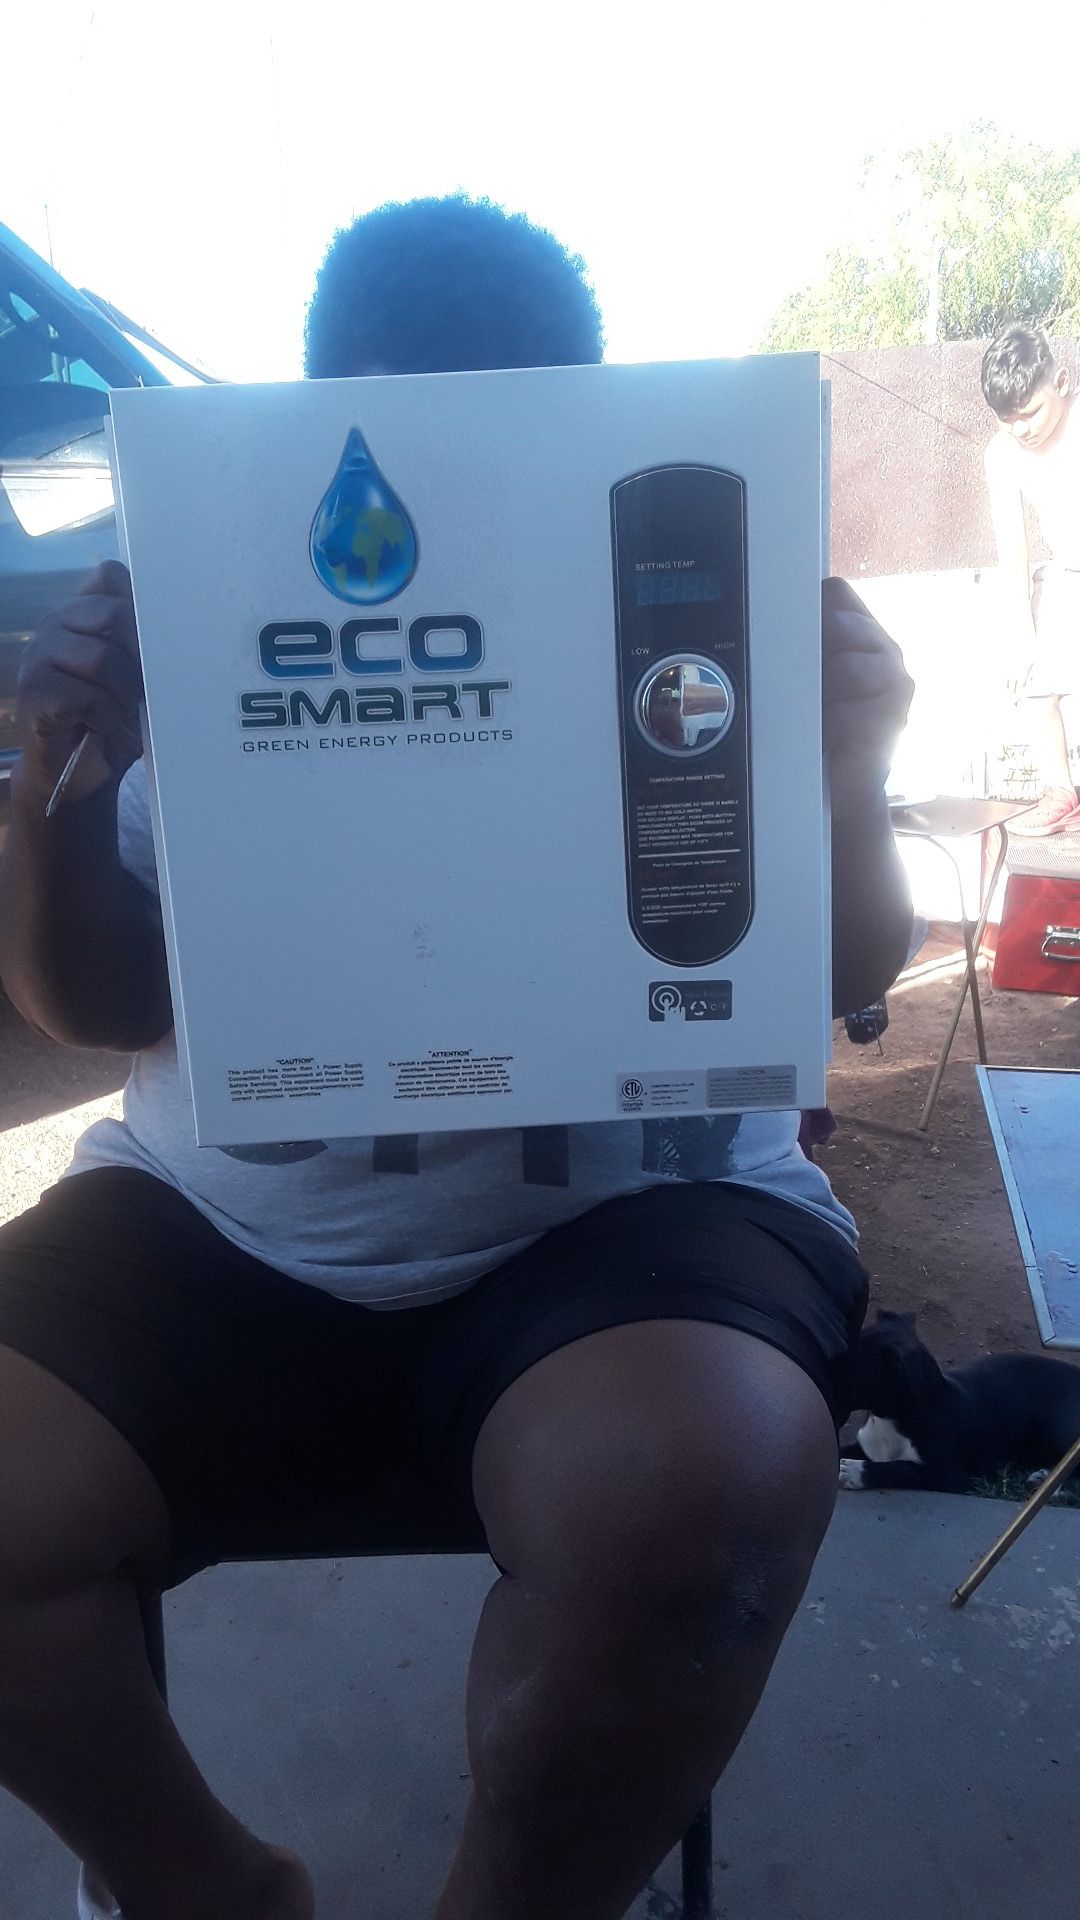 Eco smart hot water heater